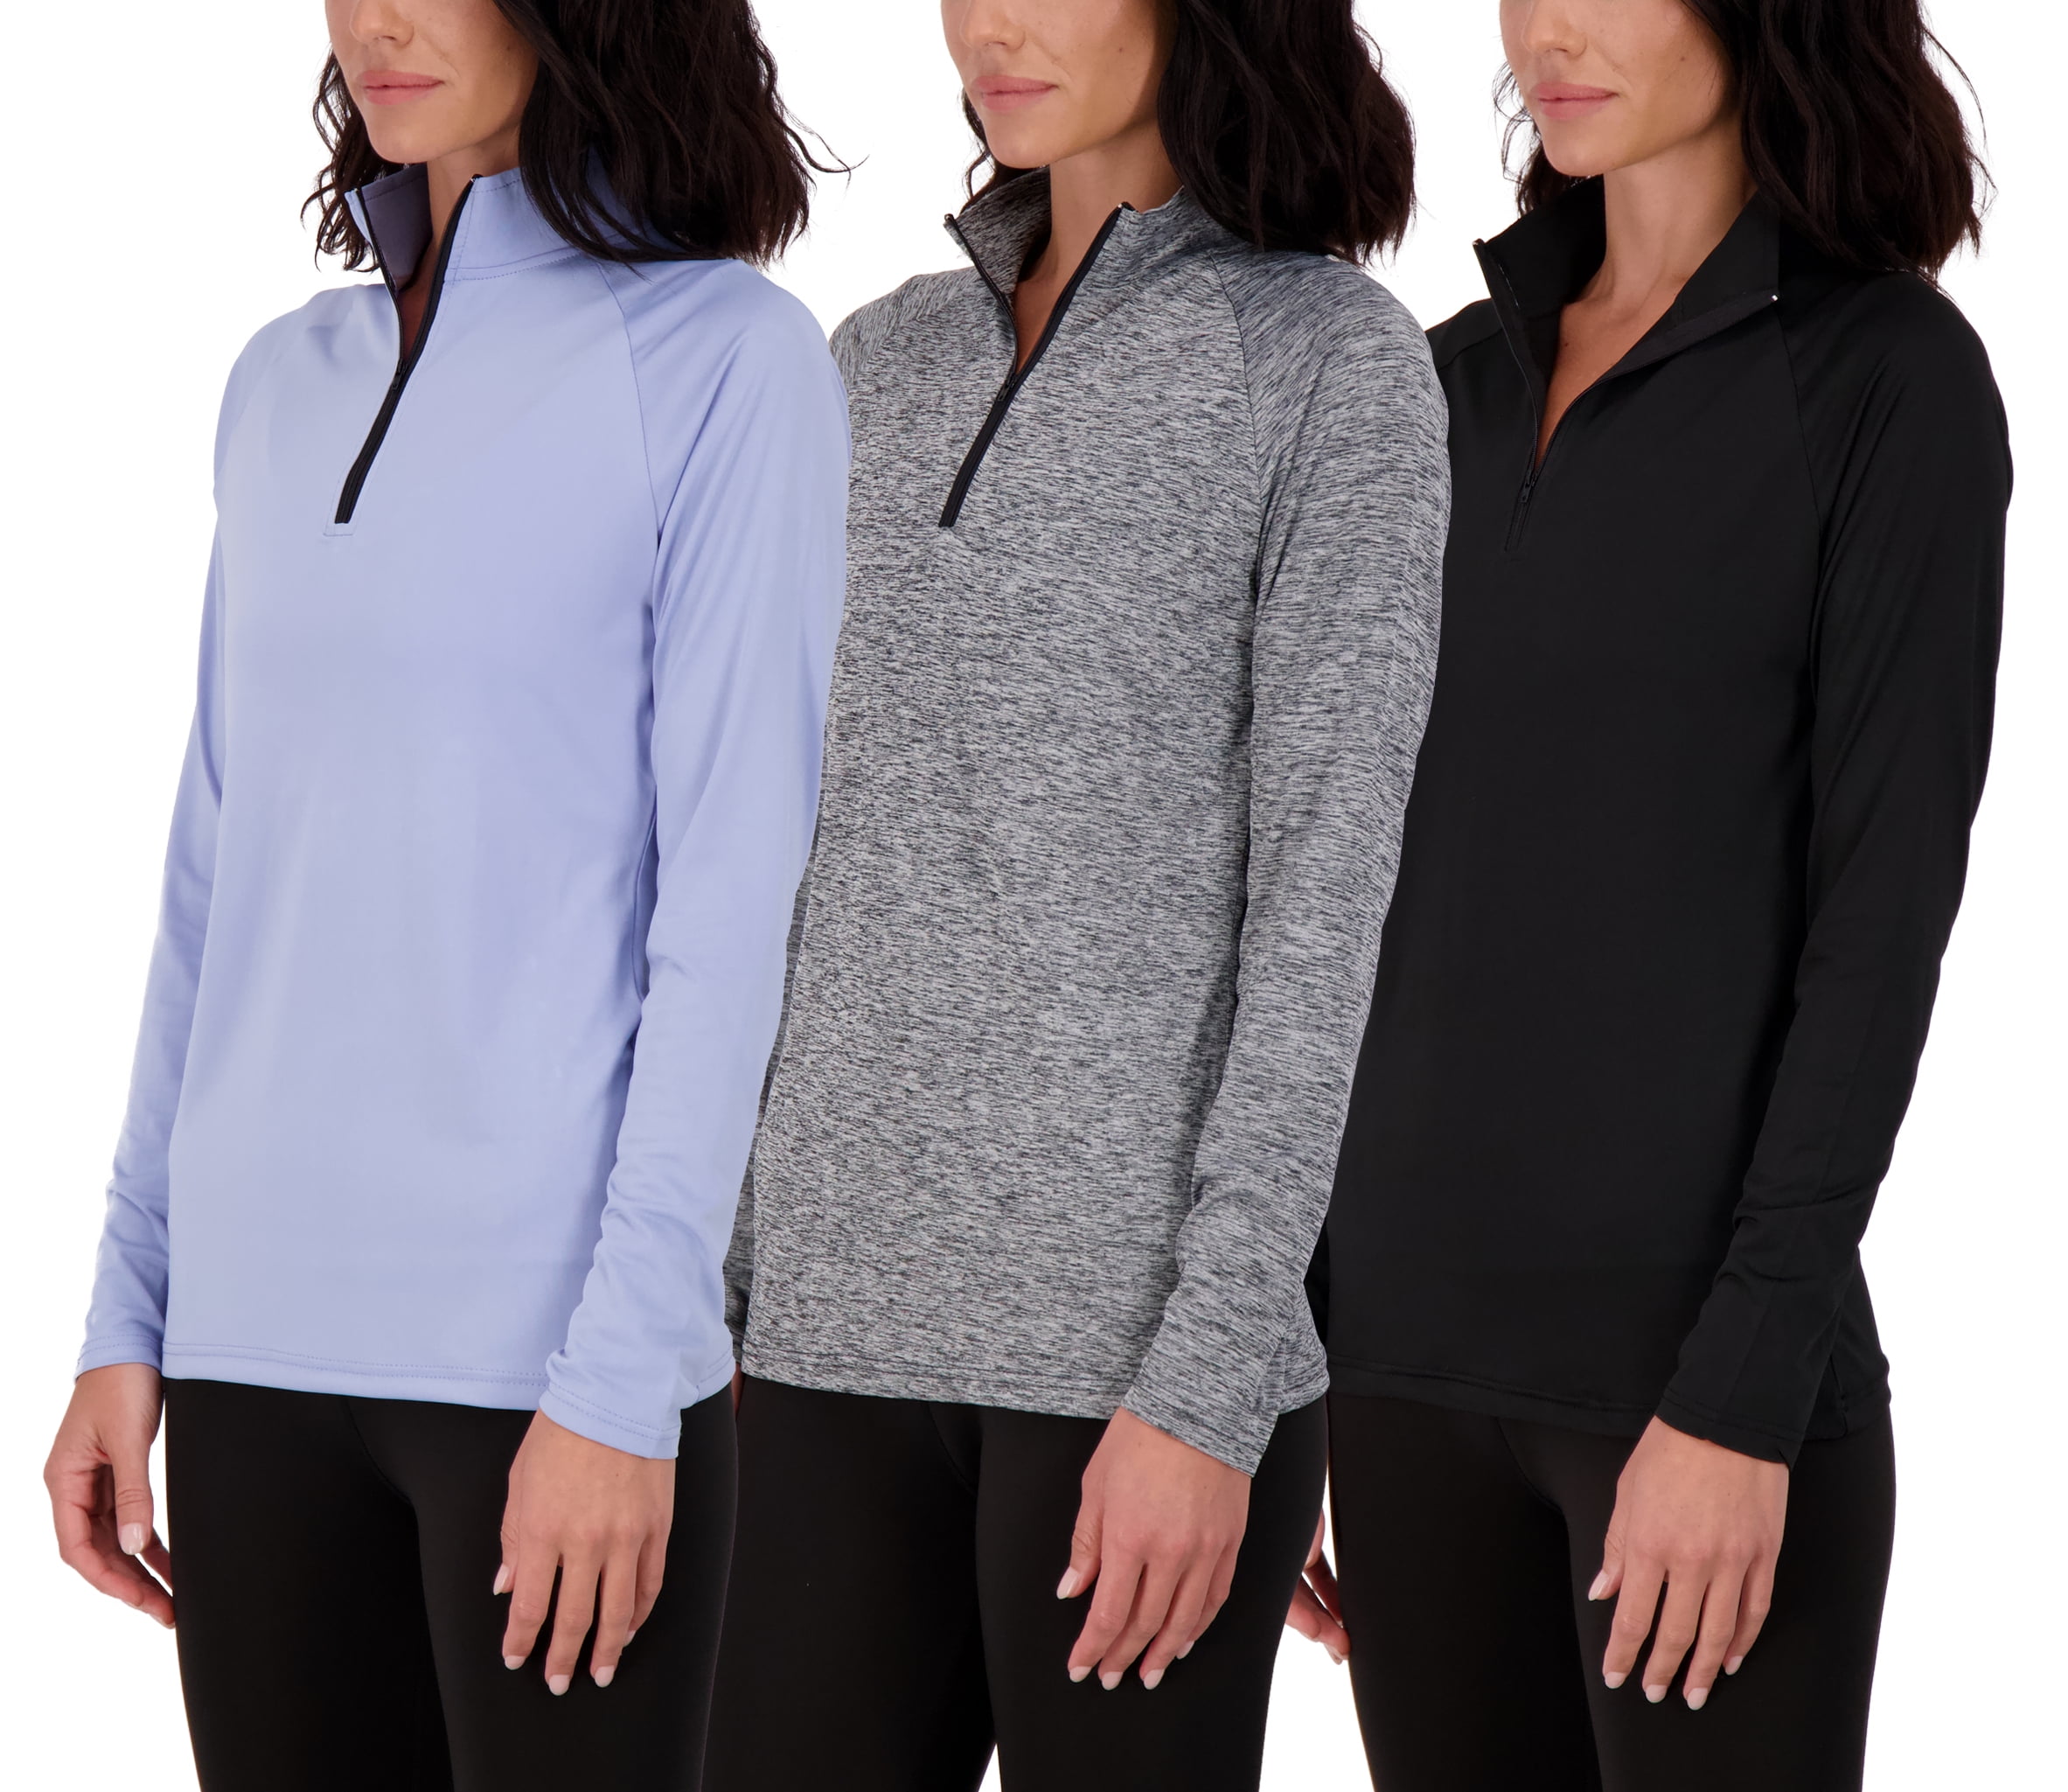 Womens Quarter Zip Long Sleeve Workout Tops 1/4 Zip Running Pullover 